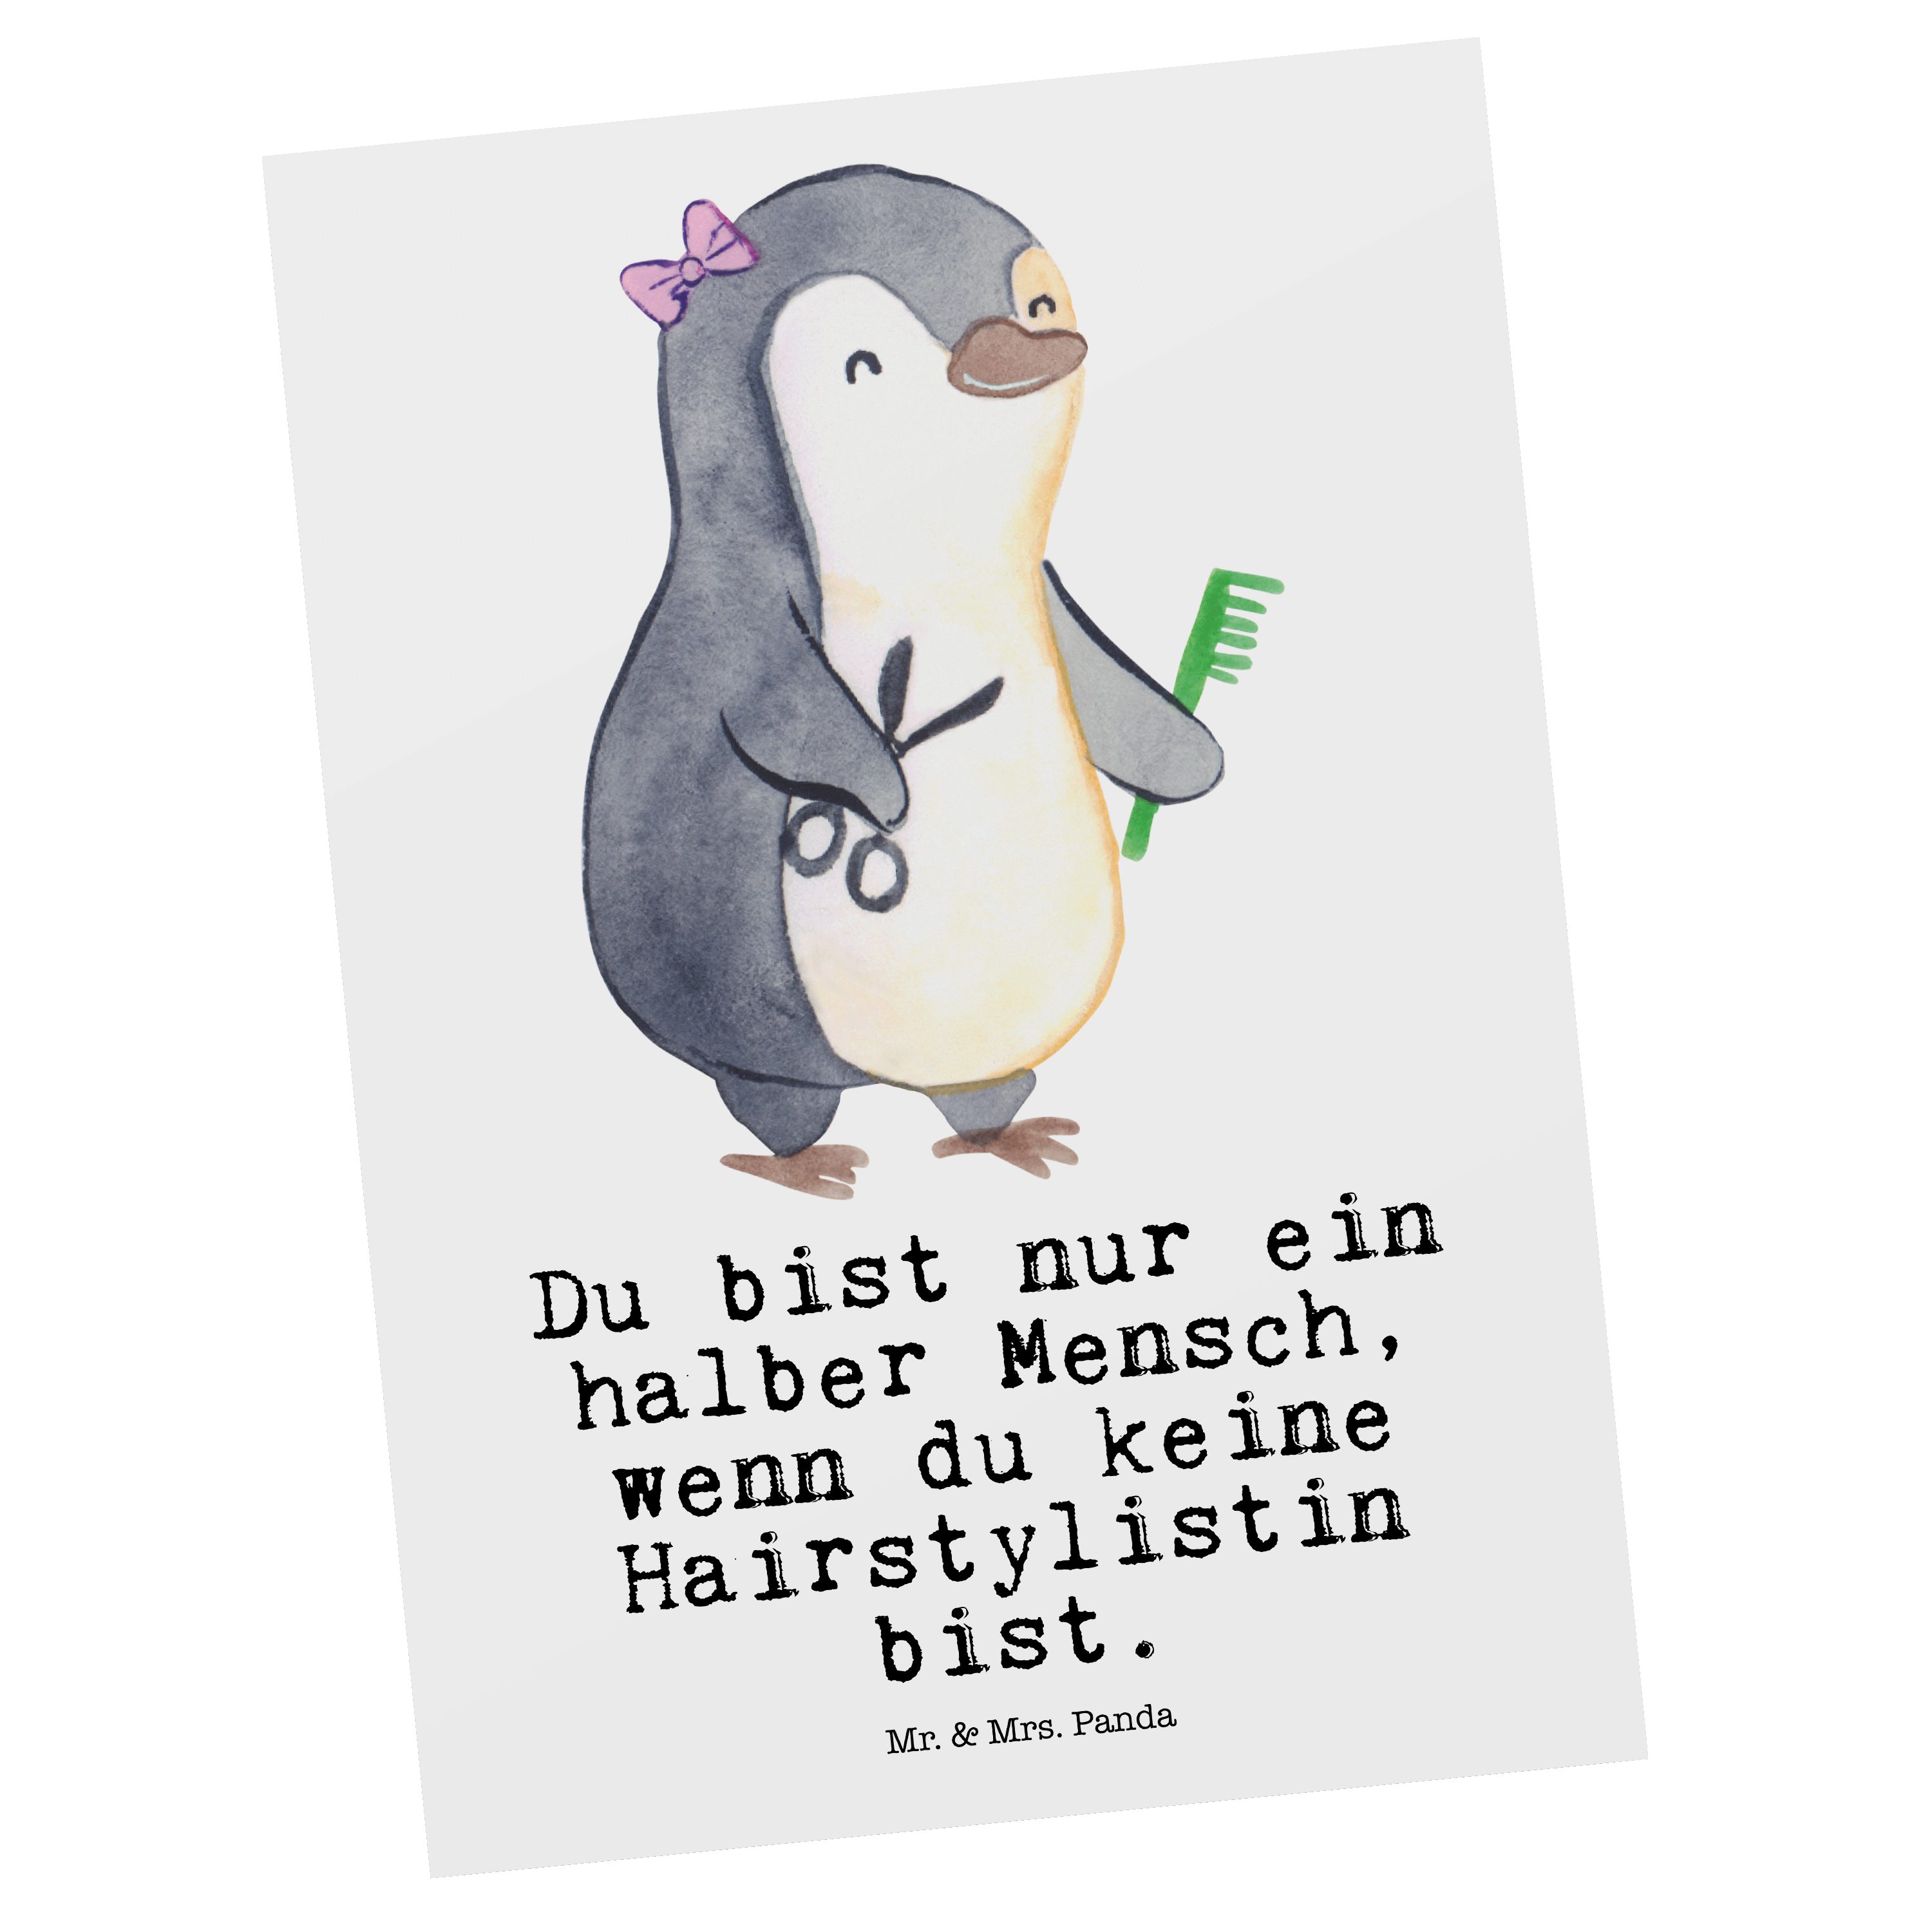 Mr. & Mrs. Panda Postkarte Hairstylistin mit Herz - Weiß - Geschenk, Haare ab, Dankeskarte, Arbe